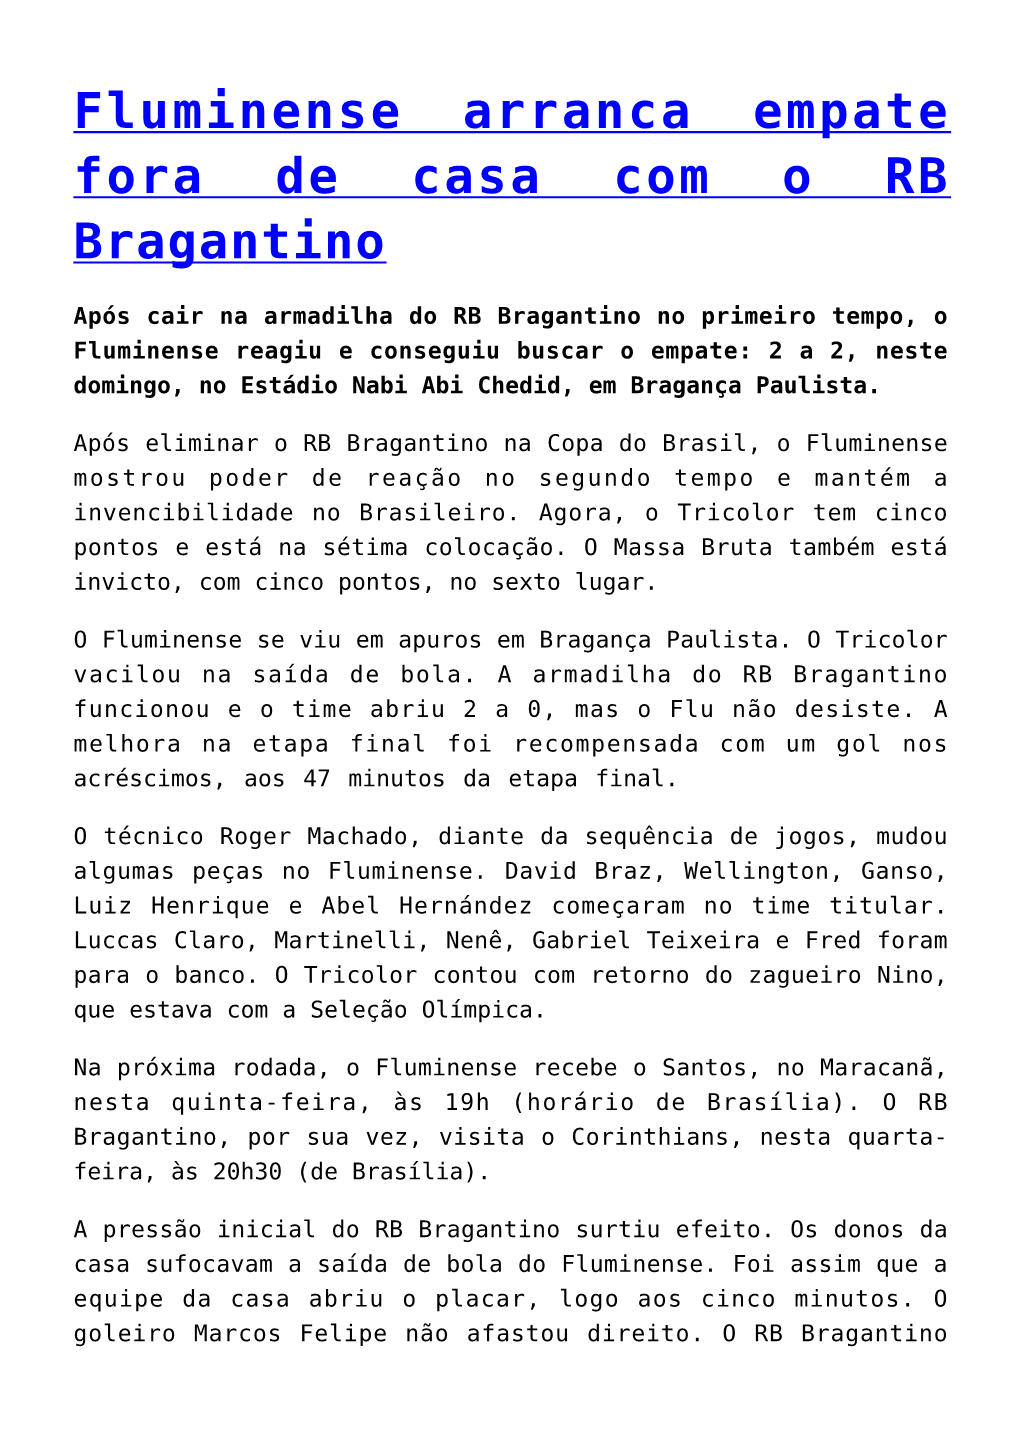 Fluminense Arranca Empate Fora De Casa Com O RB Bragantino